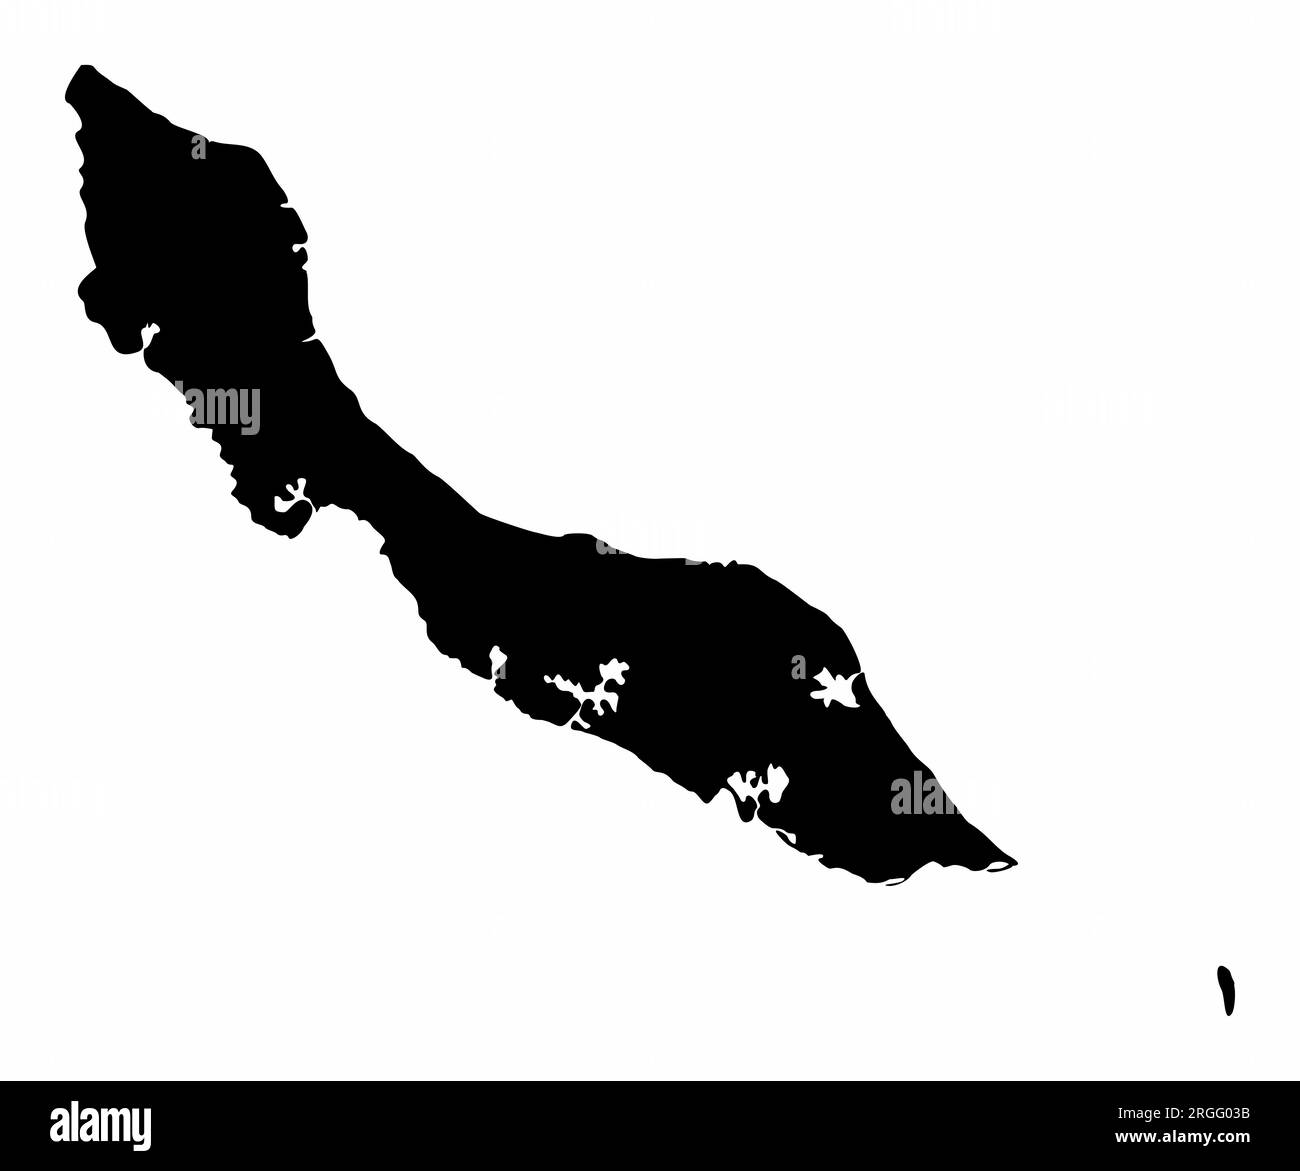 Silhouette de carte de l'île de Curaçao isolée sur fond blanc Illustration de Vecteur